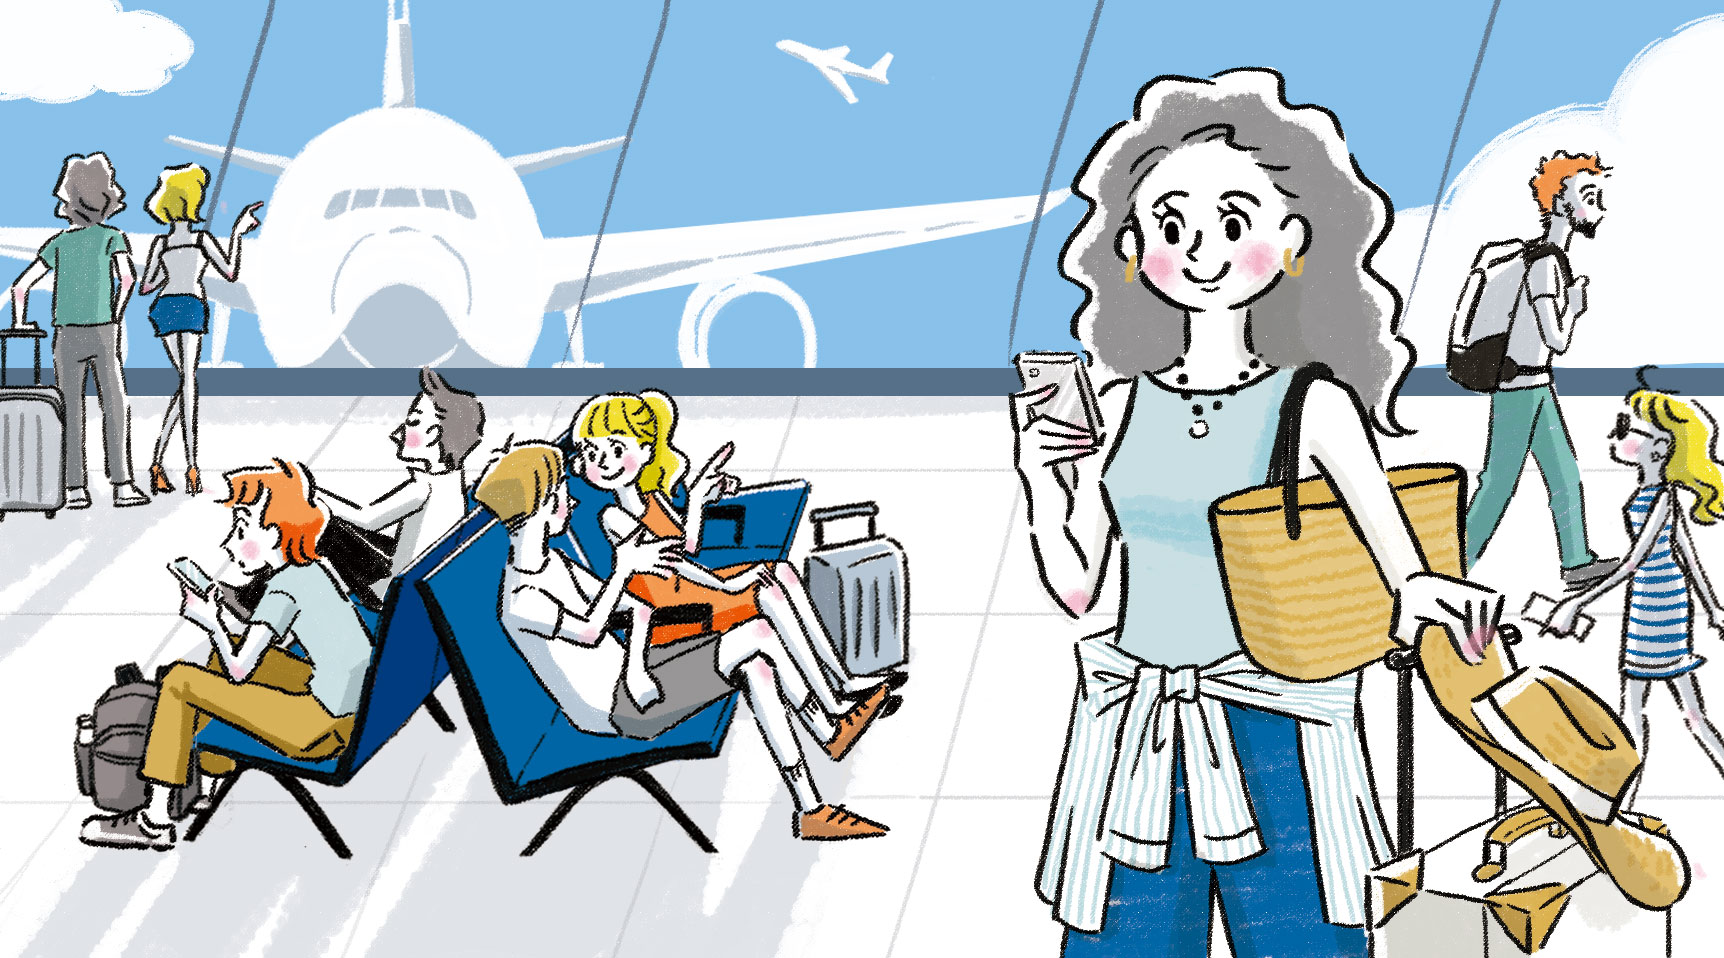 空港のロビーで、スマホを見ながら確認中の旅行に行こうとする女性のイラスト。